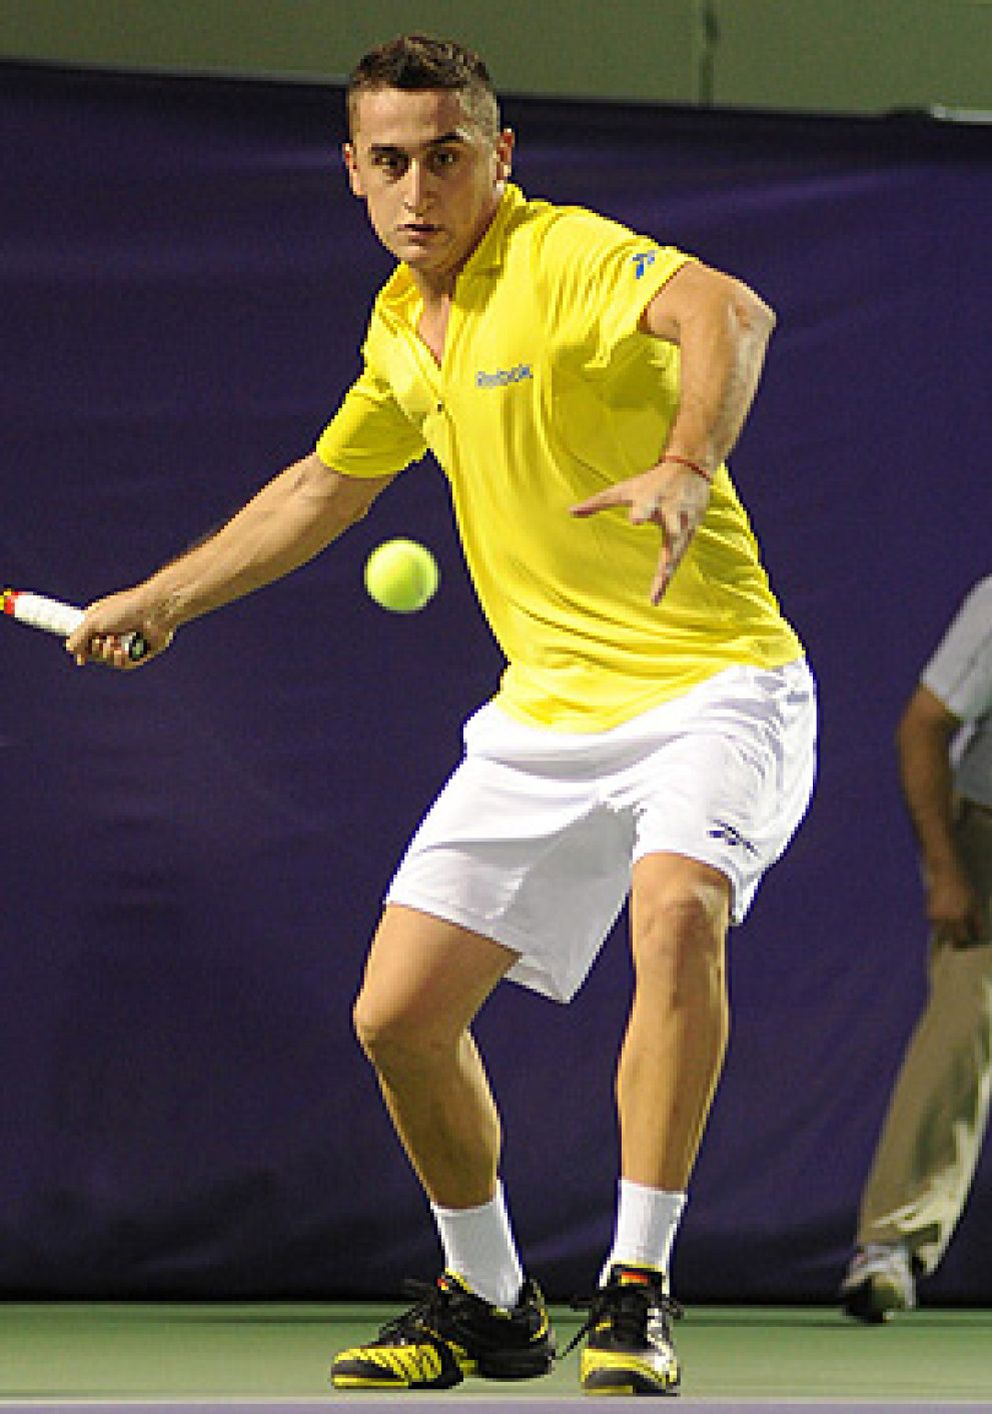 Foto: Nicolás Almagro, elegido para sustituir a Rafa Nadal en el torneo de Abu Dhabi